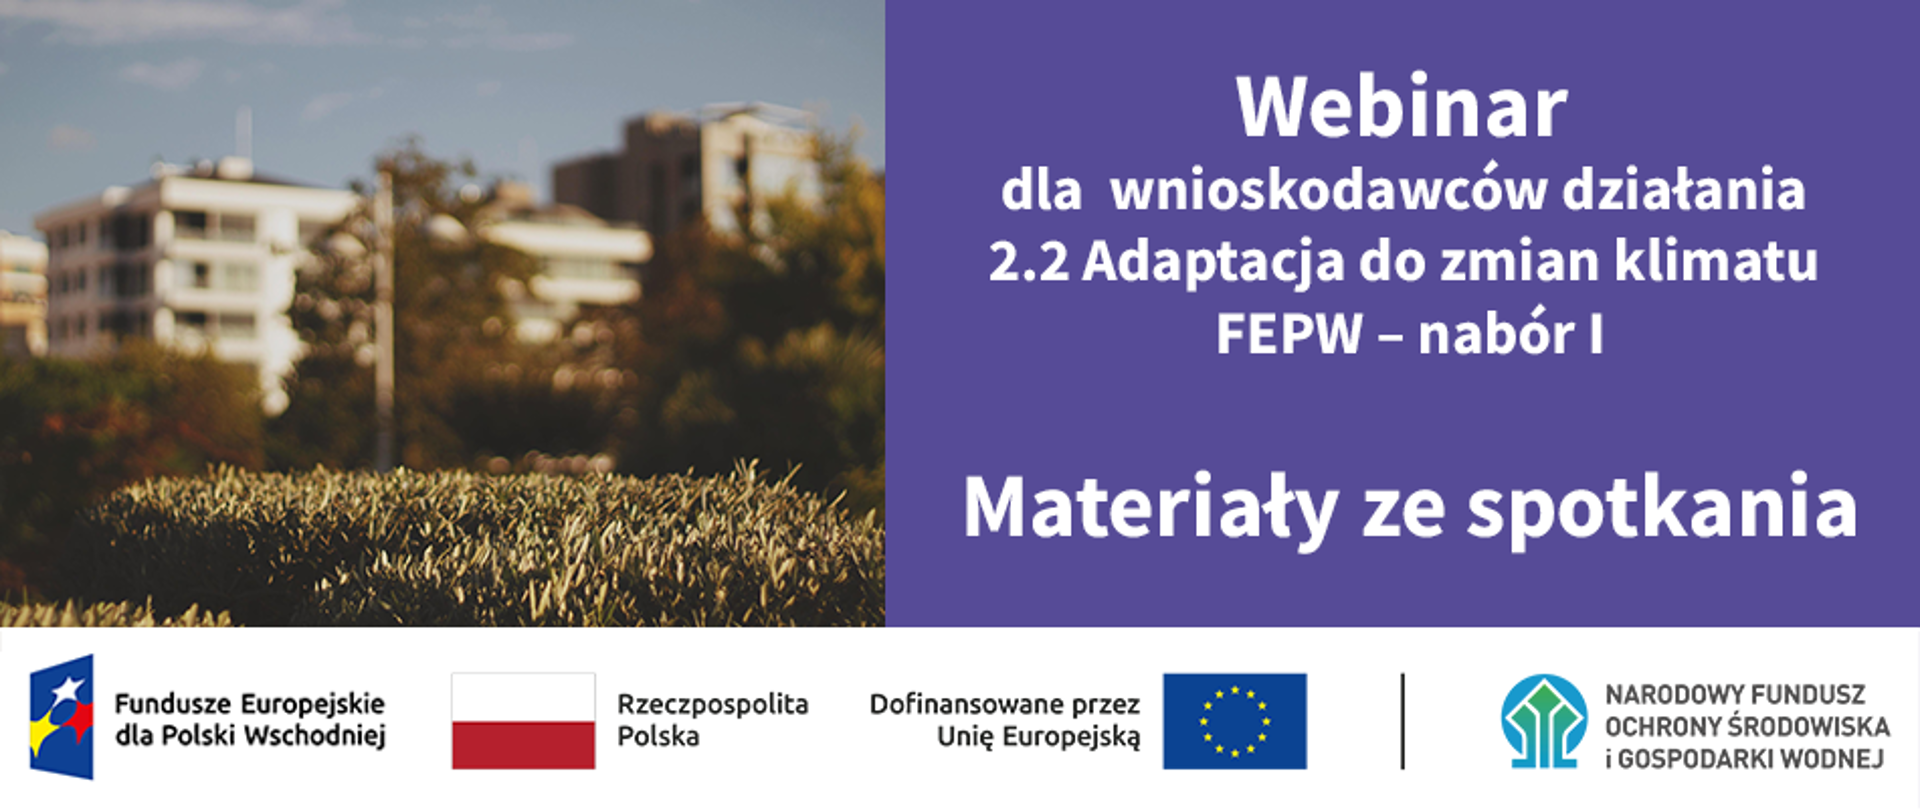 Infografika - po lewej zdjęcie miasta, po prawej napis:"Webinar dla wnioskodawców działania 2.2 Adaptacja do zmian klimatu FEPW – nabór I. Materiały ze spotkania", a na dole ciąg znaków: FEPW, RP, UE i NFOŚiGW.